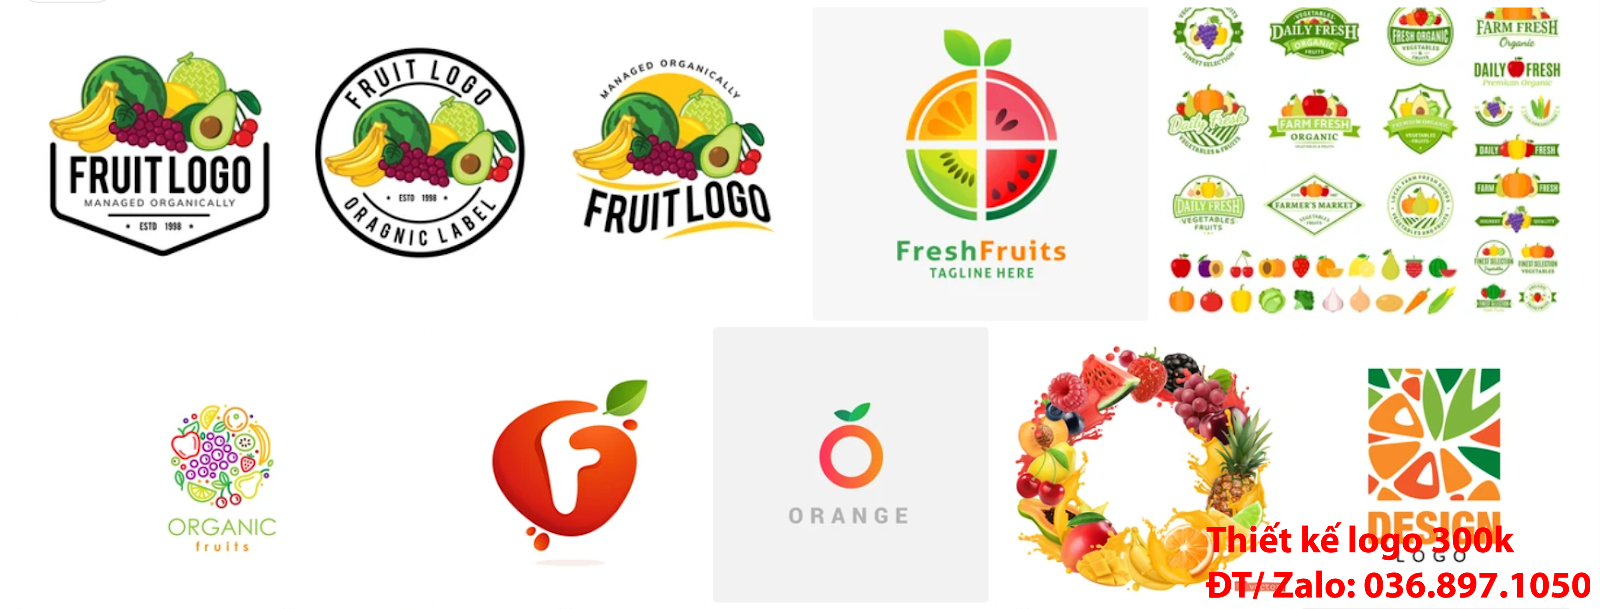 Công ty nhận thiết kế lô gô online giá rẻ chất lượng tại Tp Hồ Chí Minh về chủ đề Mẫu logo trái cây